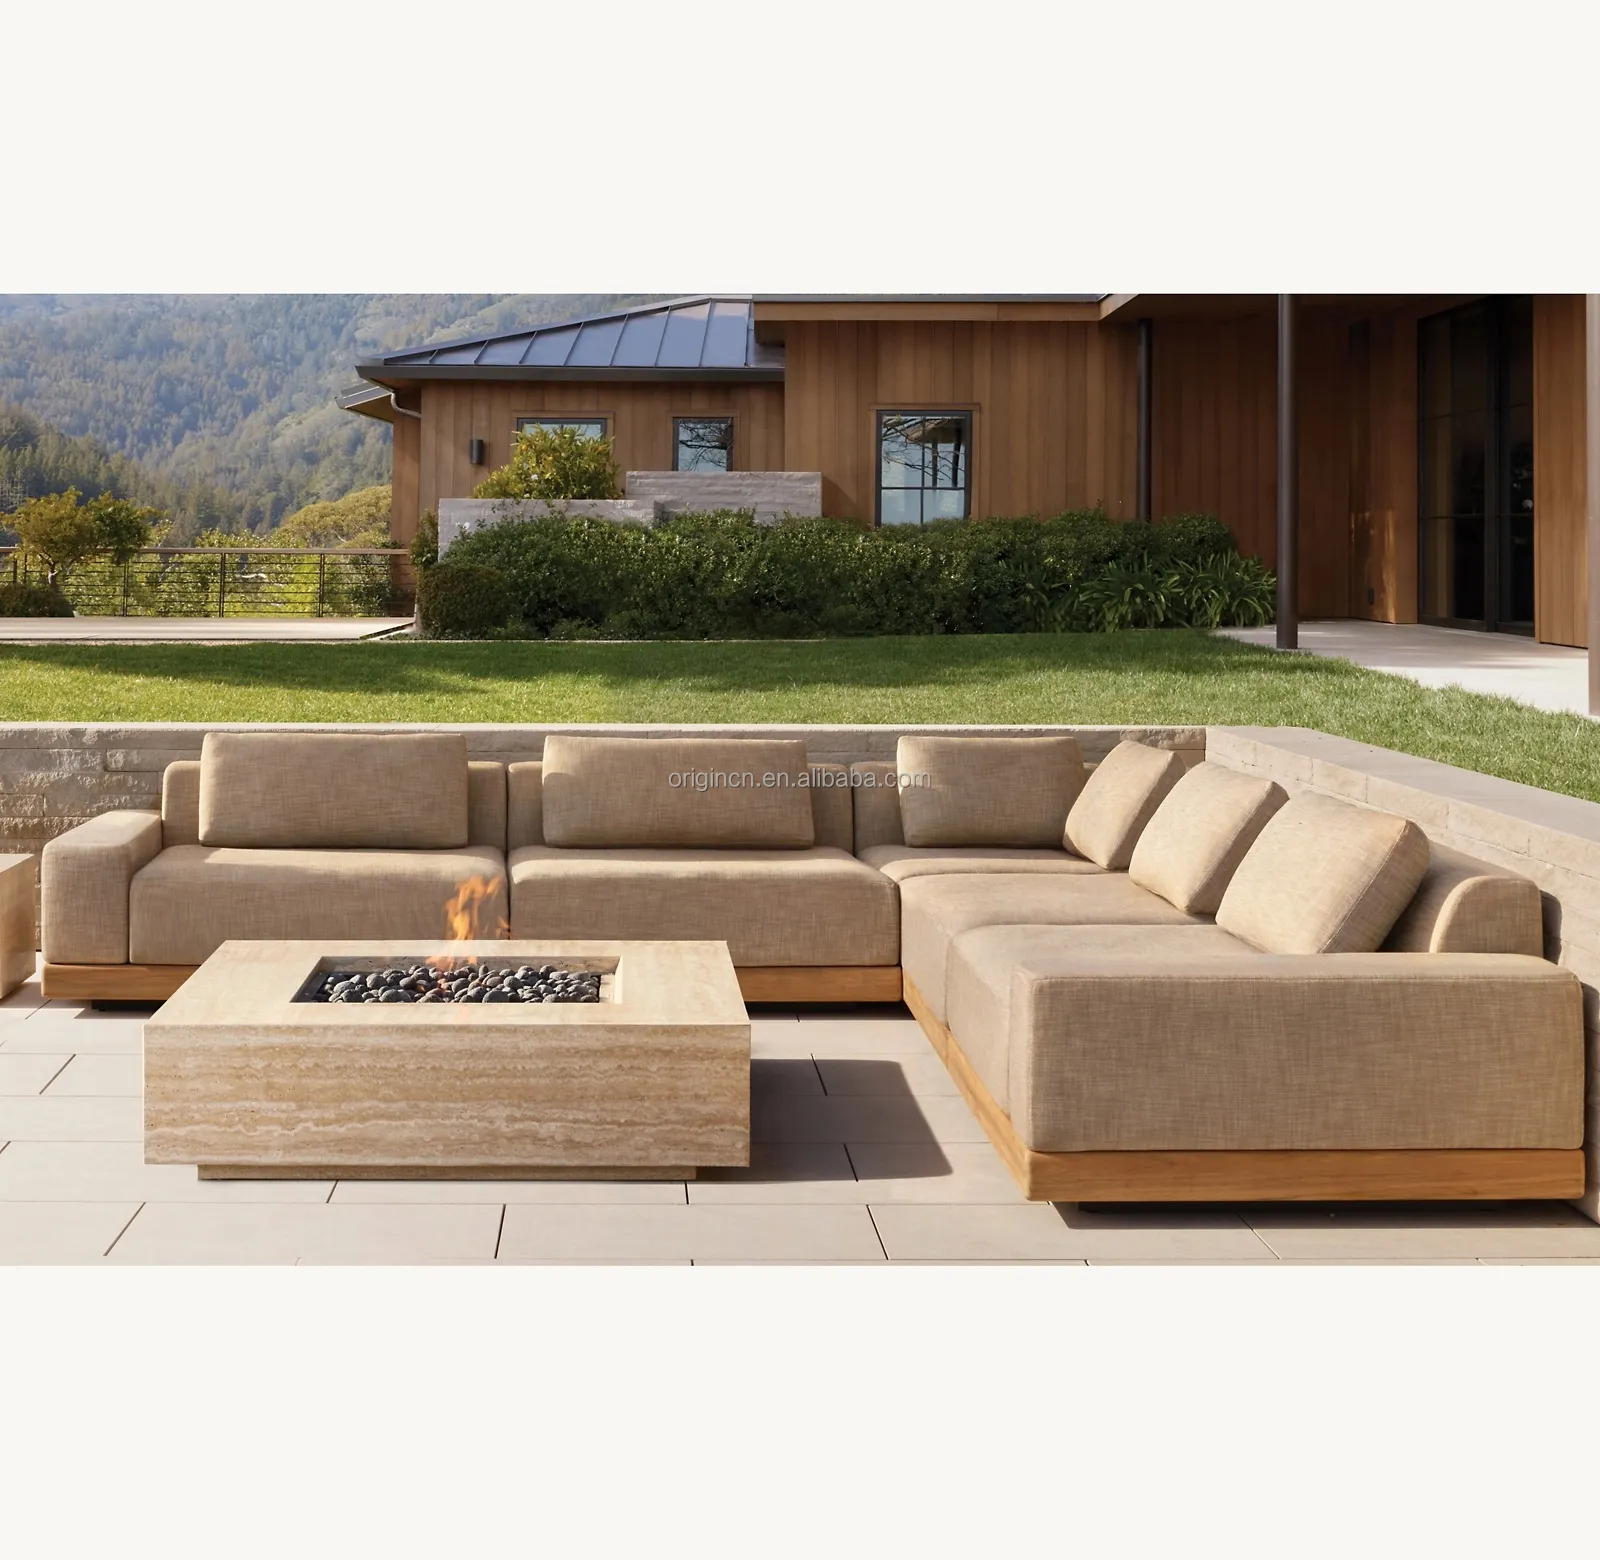 أريكة ركنية من خشب الساج بتصميم أنيق وحديث ومنقوشة على شكل حرف L ومناسبة للاستخدام في الحدائق والأماكن المفتوحة